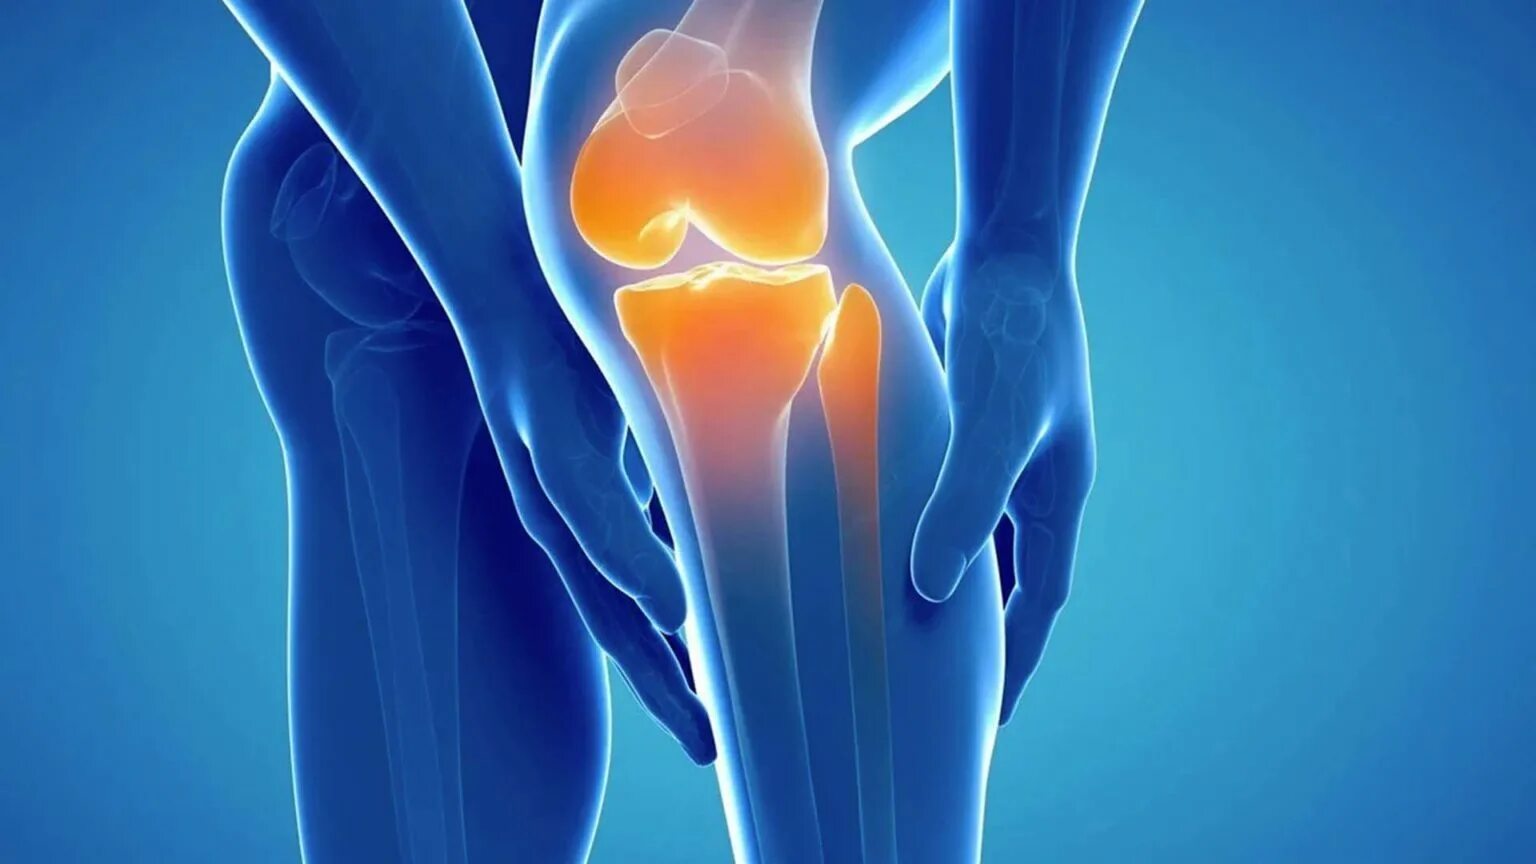 Эффективное лечение артроза сустава. Пателлофеморальный артроз коленного сустава рентген. Дисплазия пателлофеморального сустава колена. Здоровые суставы.